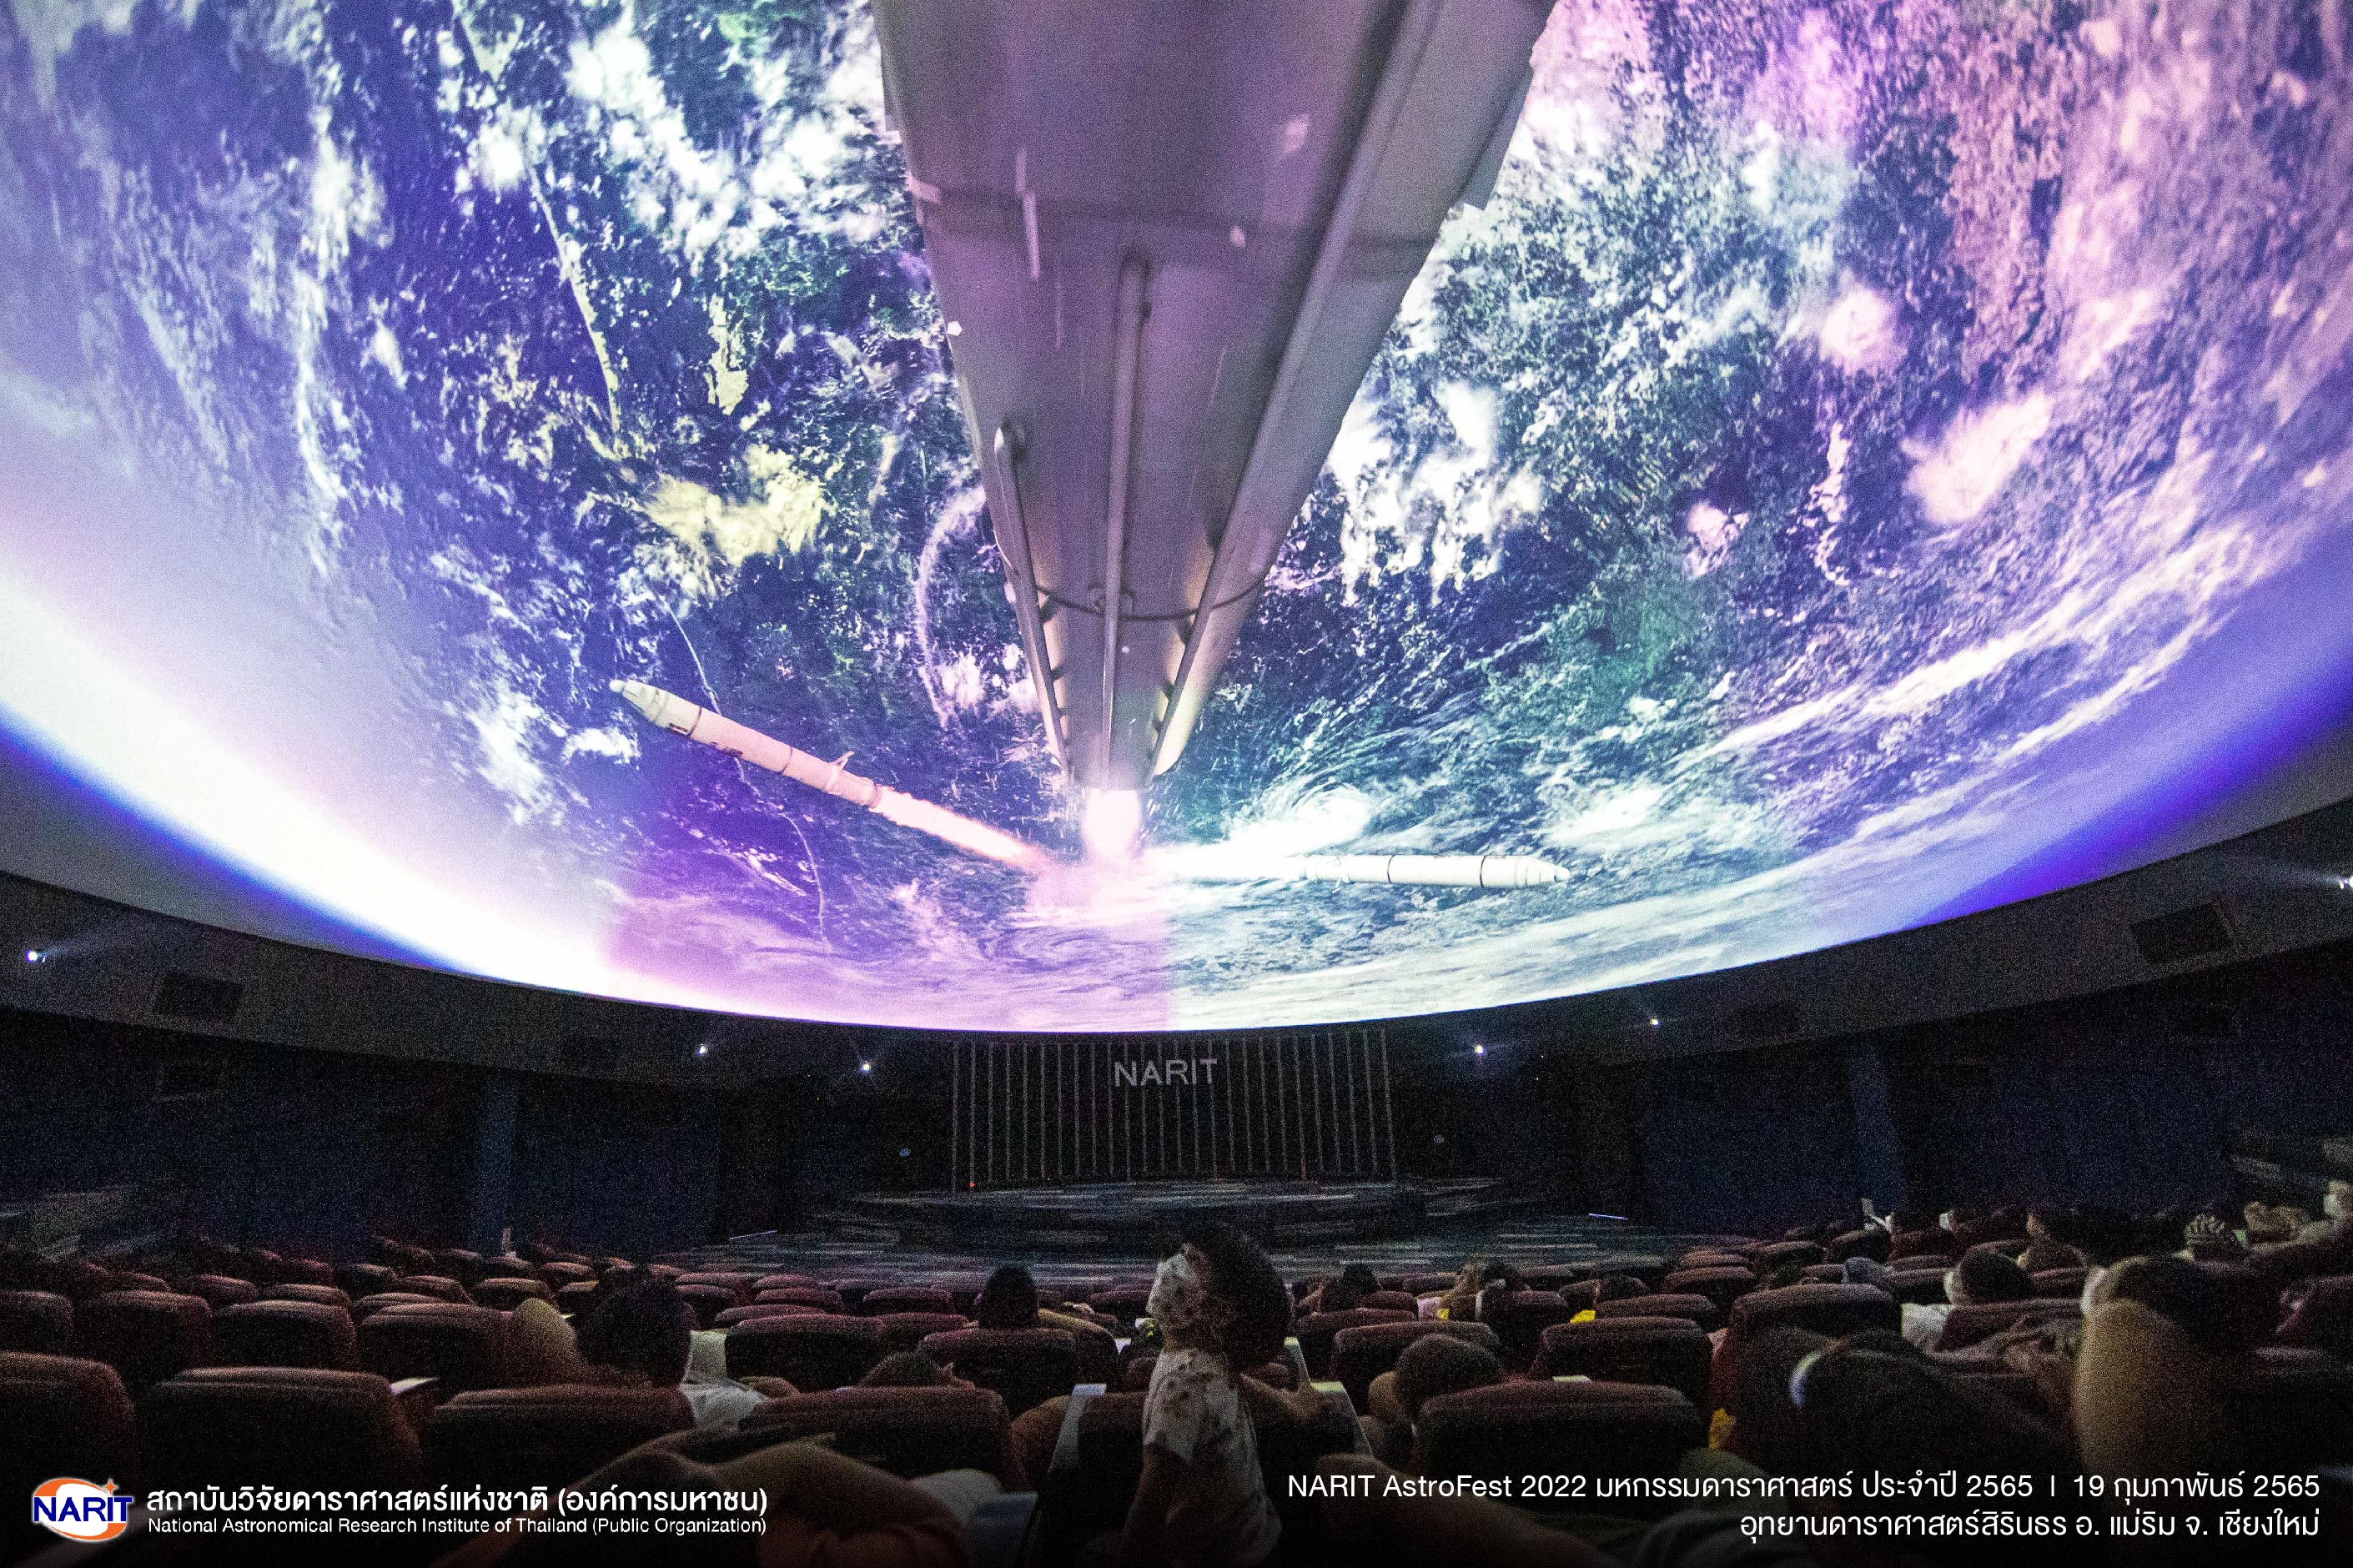 ตะลุยโลกดาราศาสตร์ และเทคโนโลยี ทุกภูมิภาคสุดคึกคัก ในงานมหกรรมดาราศาสตร์แห่งปี “NARIT AstroFest 2022” 